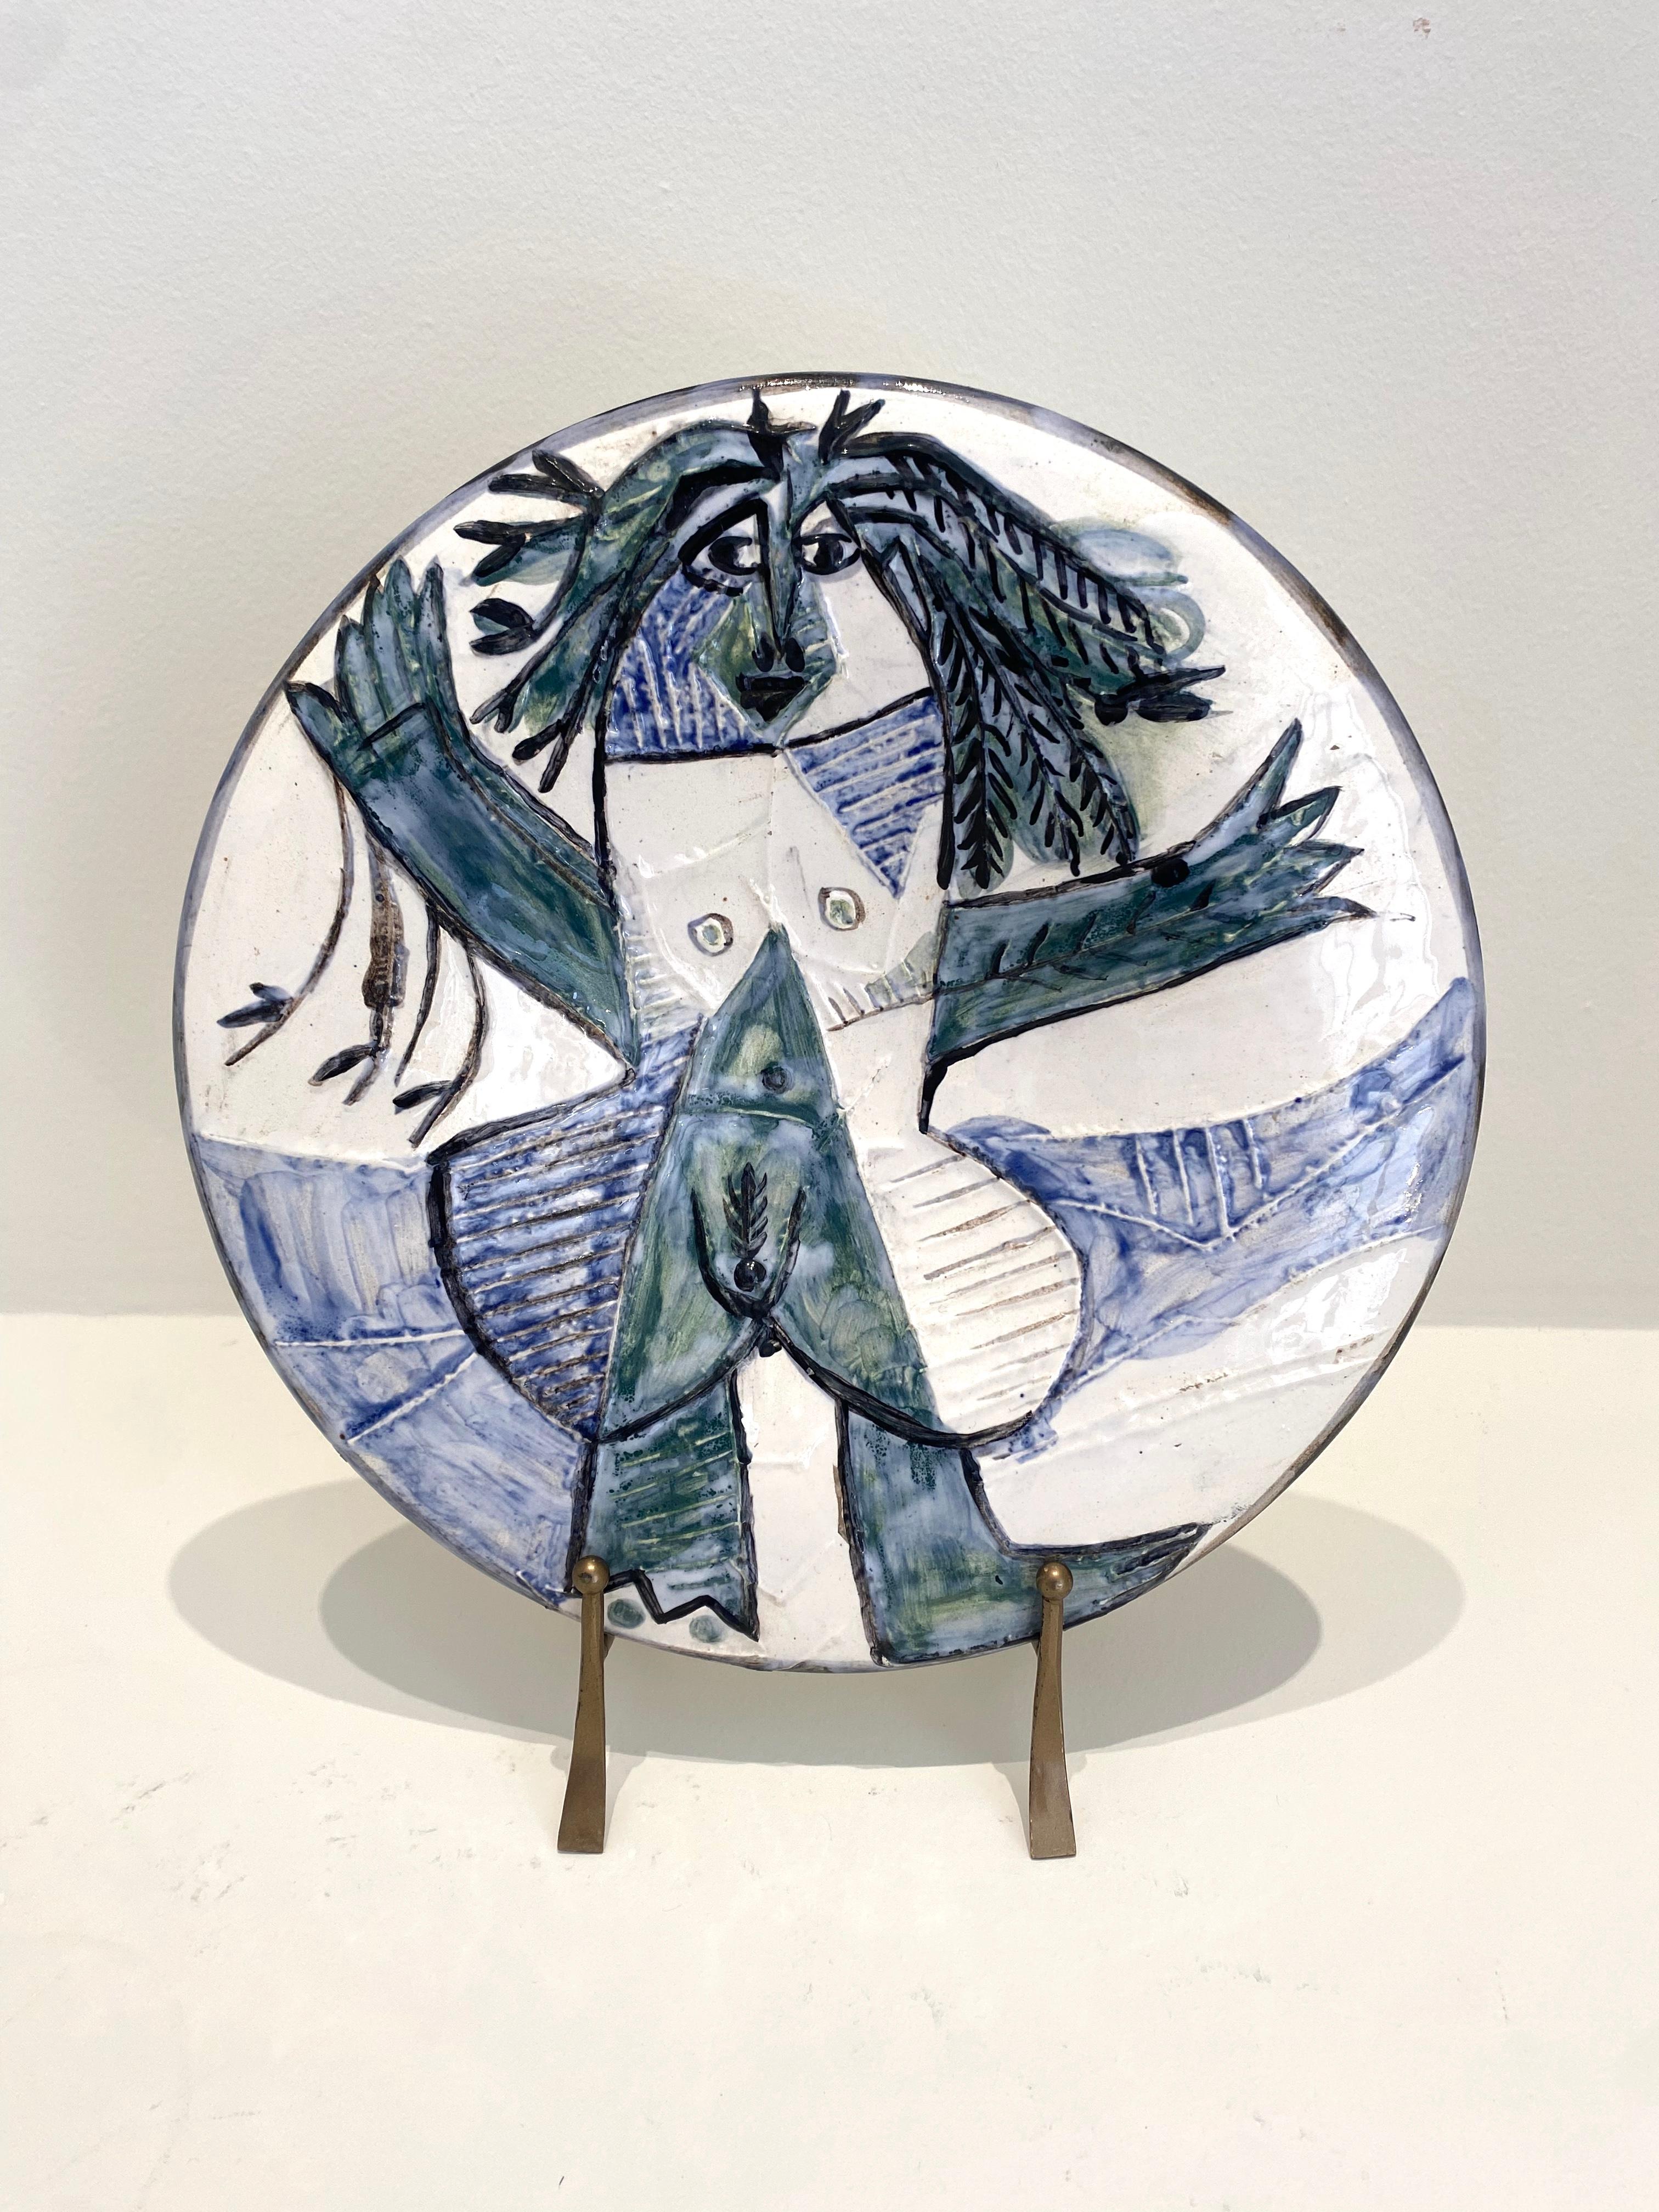 Femme Echevelée, Picasso, Multiples, Edition, Keramik, Frauen, 1960er Jahre, Akt – Art von Pablo Picasso